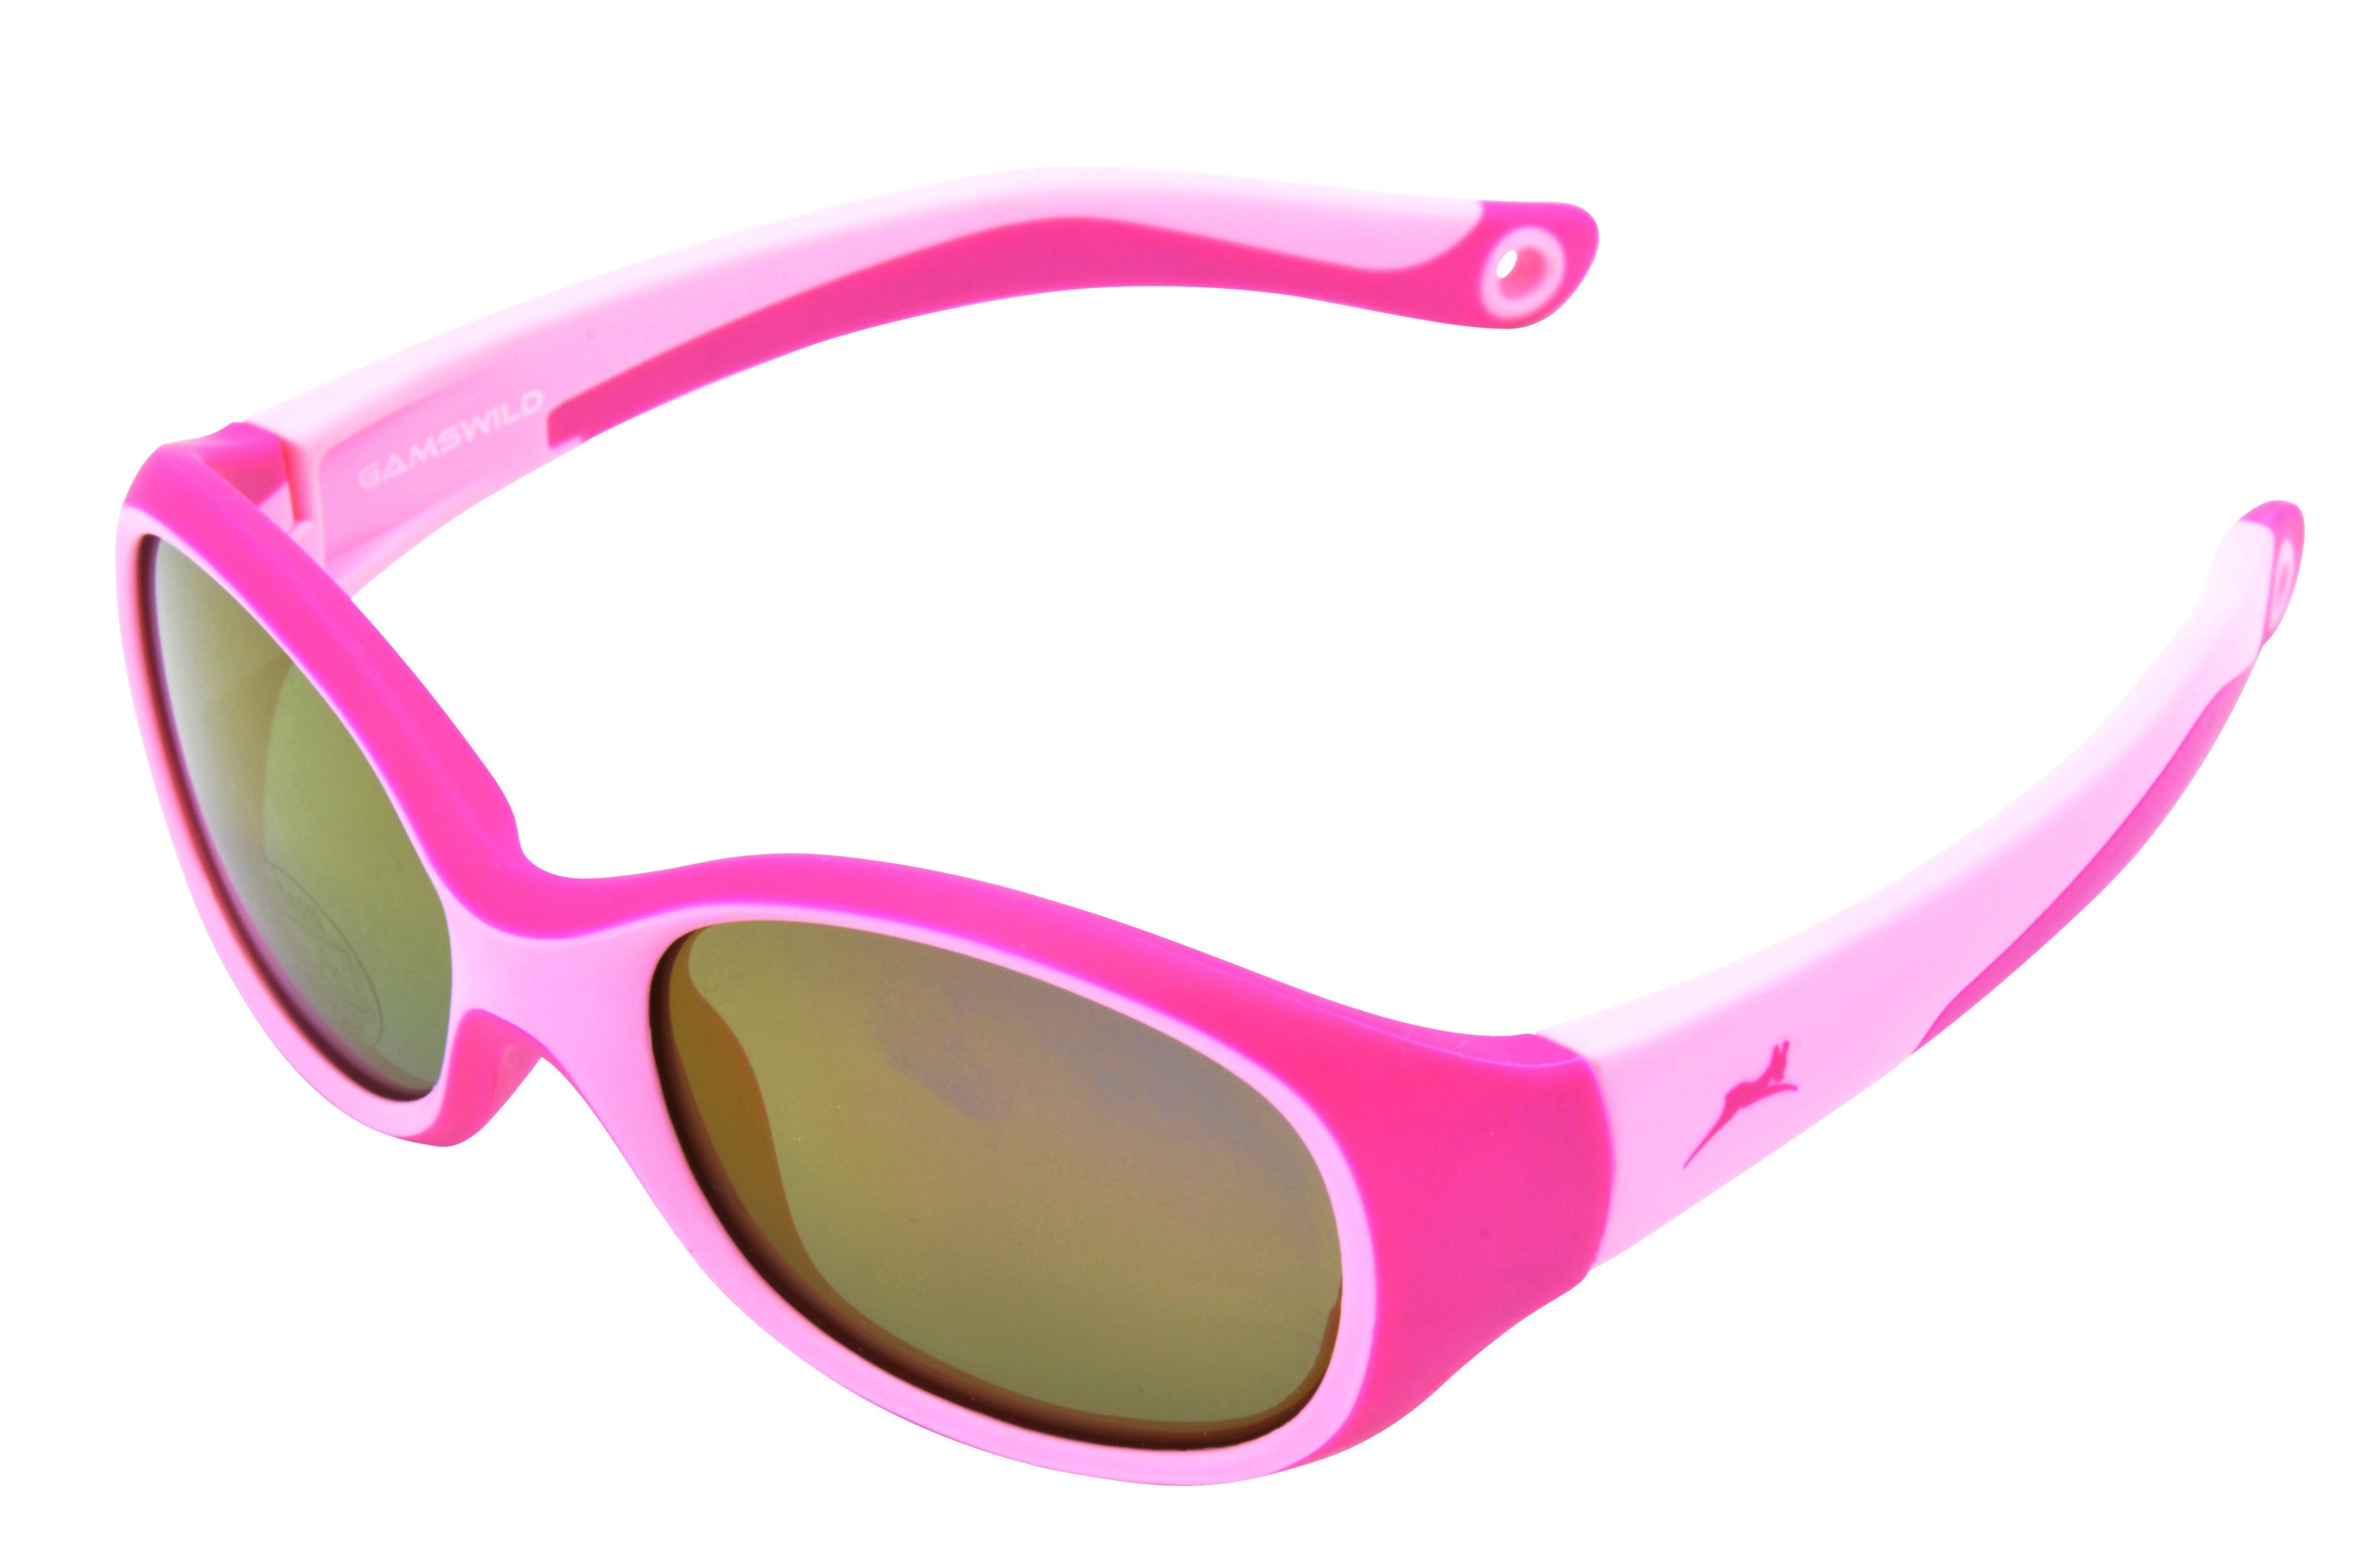 Gamswild Sonnenbrille UV400 GAMSKIDS Kinderbrille 3-6 Jahre Kleinkindbrille Mädchen Jungen kids Unisex Modell WK5121 in blau, grün, rosa